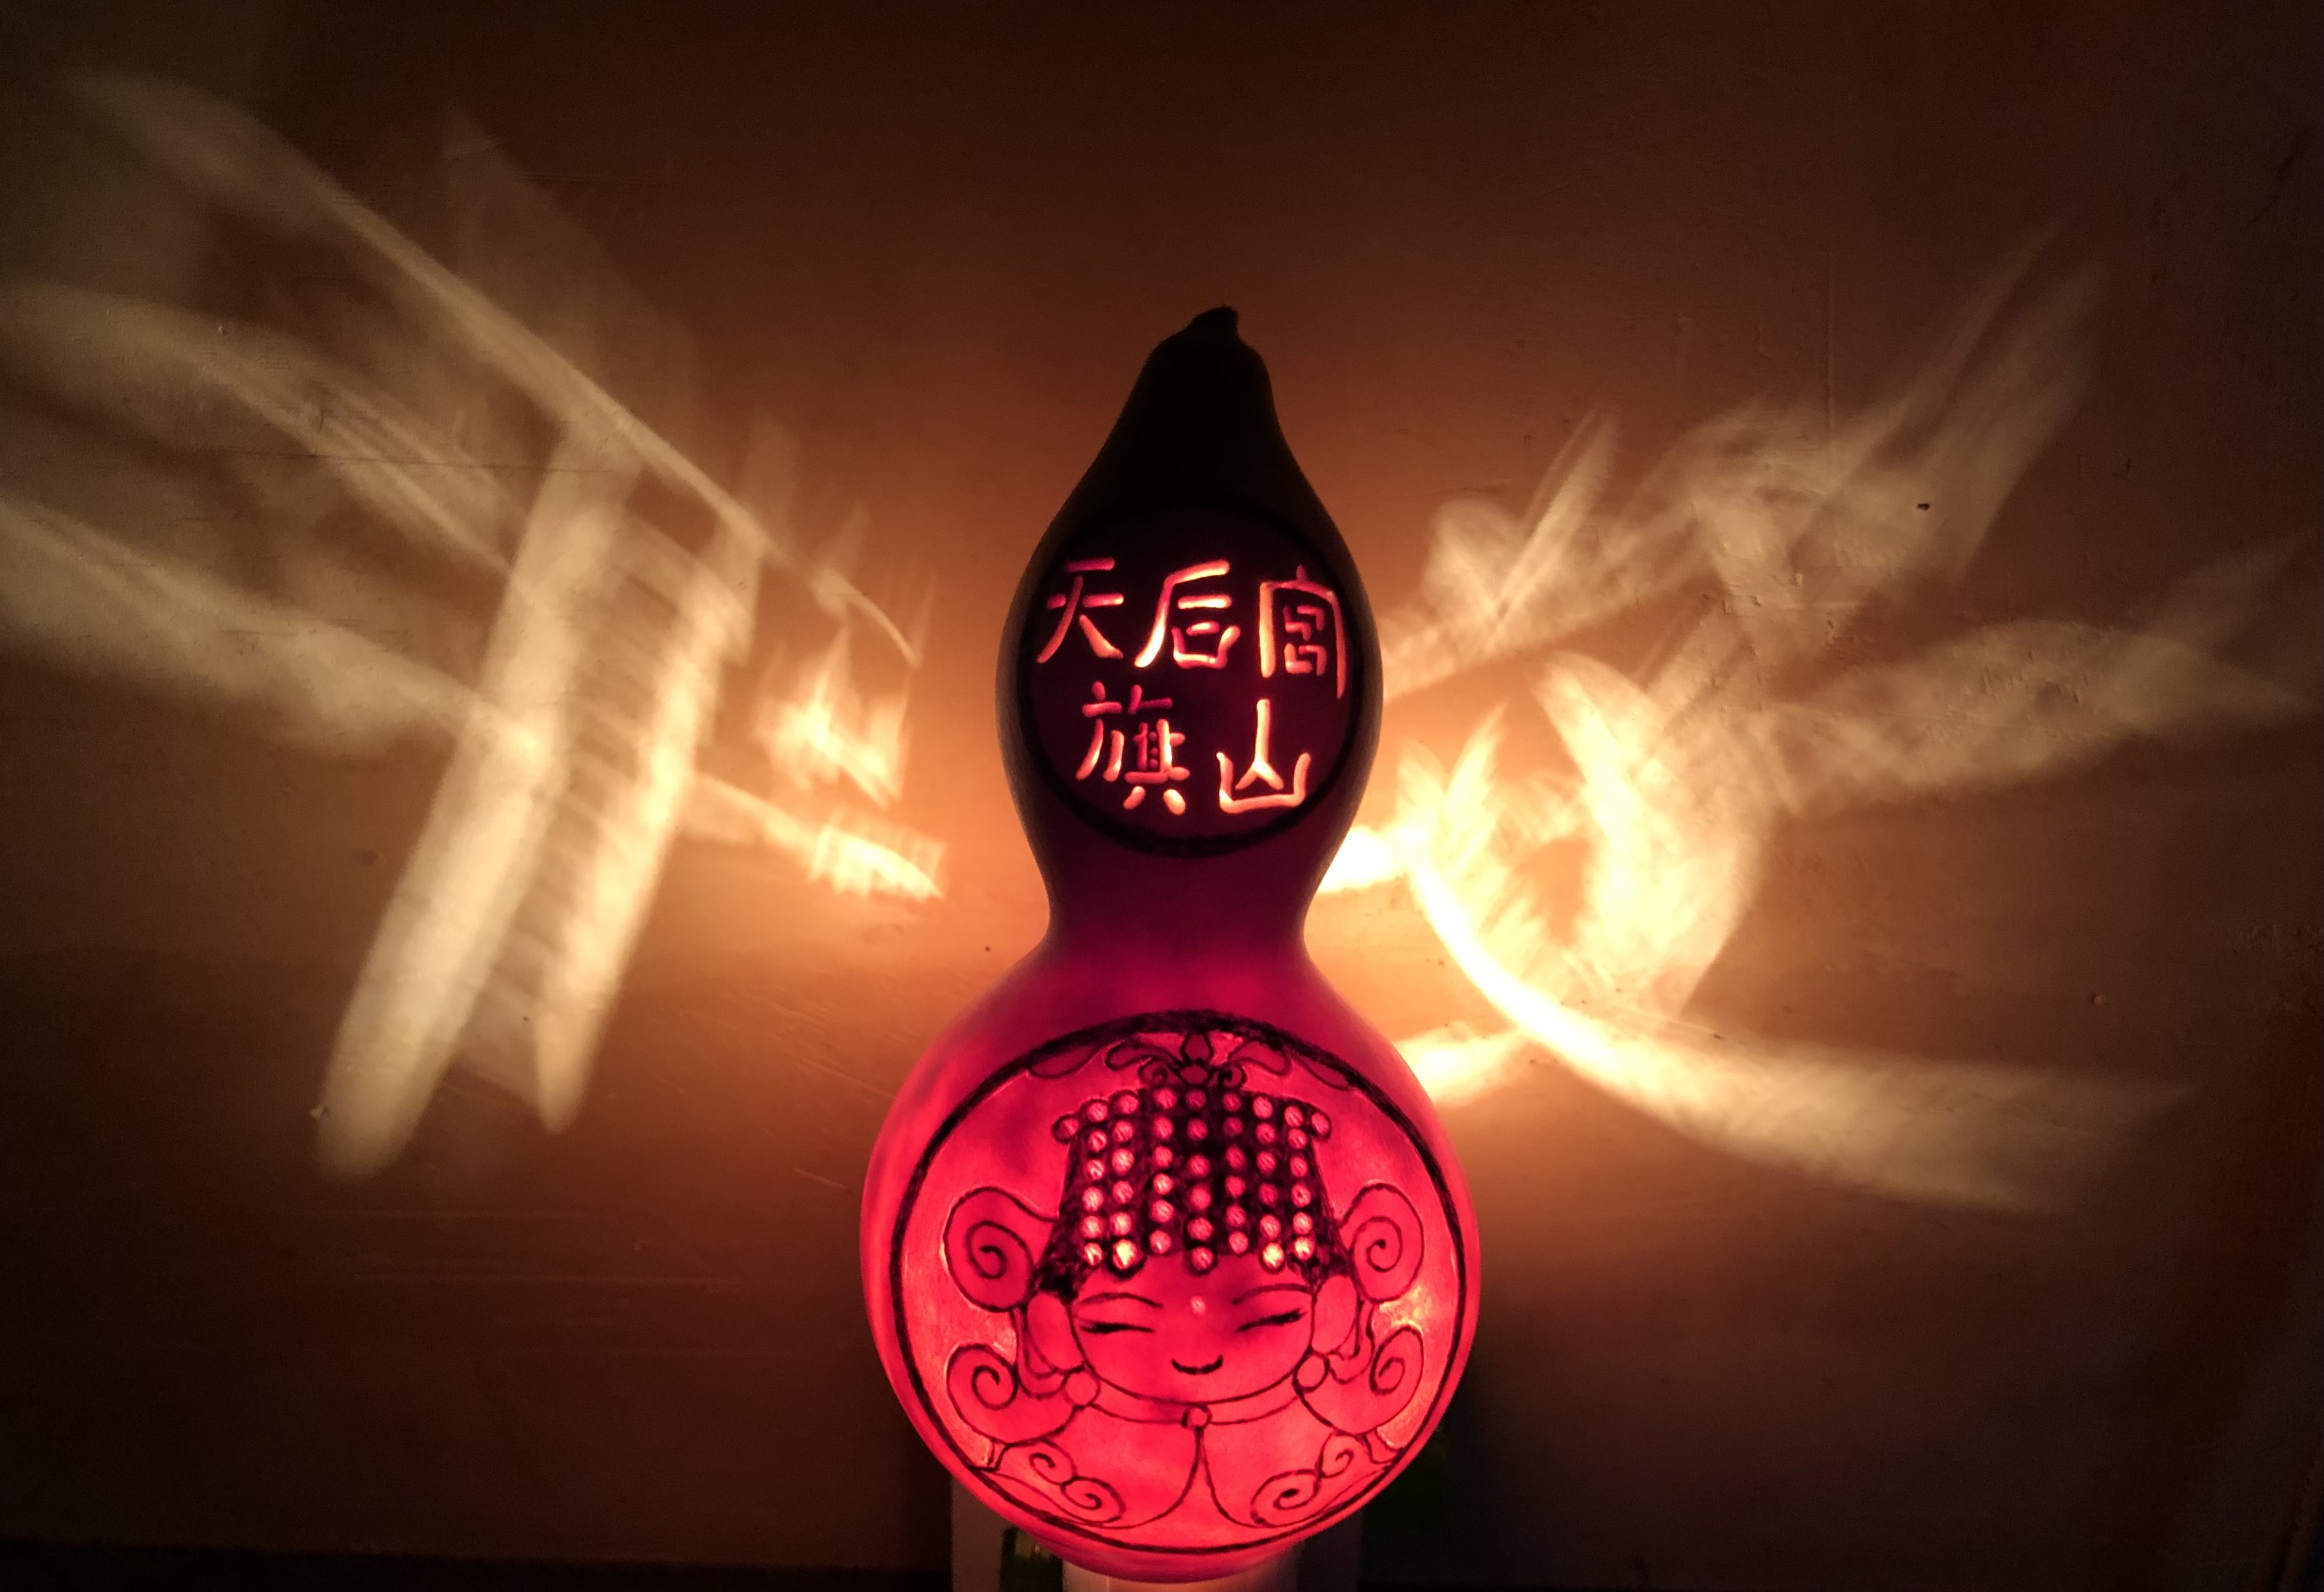 平安葫蘆夜燈